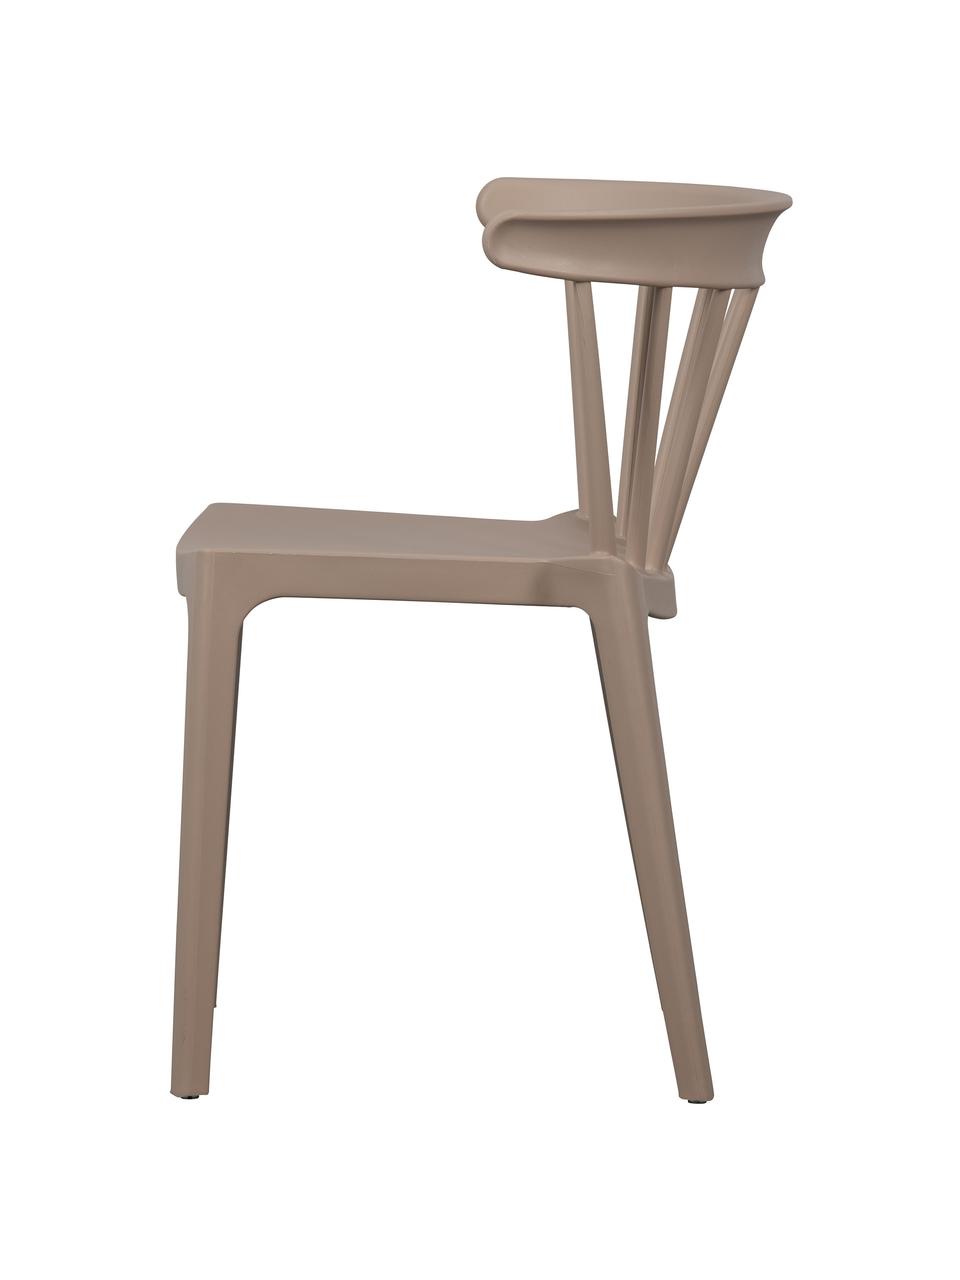 Stohovatelná zahradní židle Bliss, Polypropylen, Taupe, Š 52 cm, H 53 cm